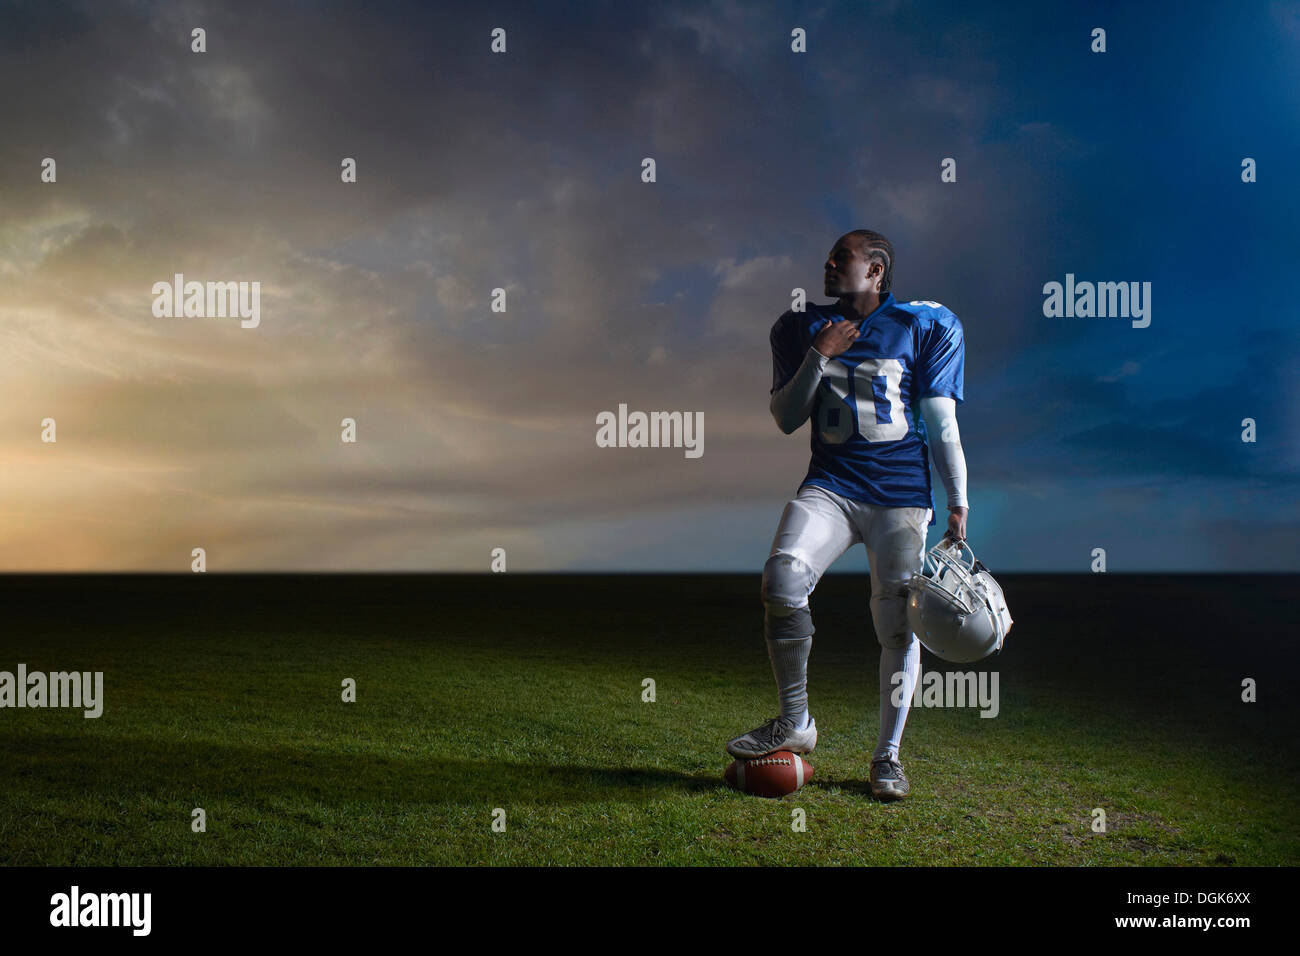 Portrait de joueur de football américain pied reposer sur ball Banque D'Images